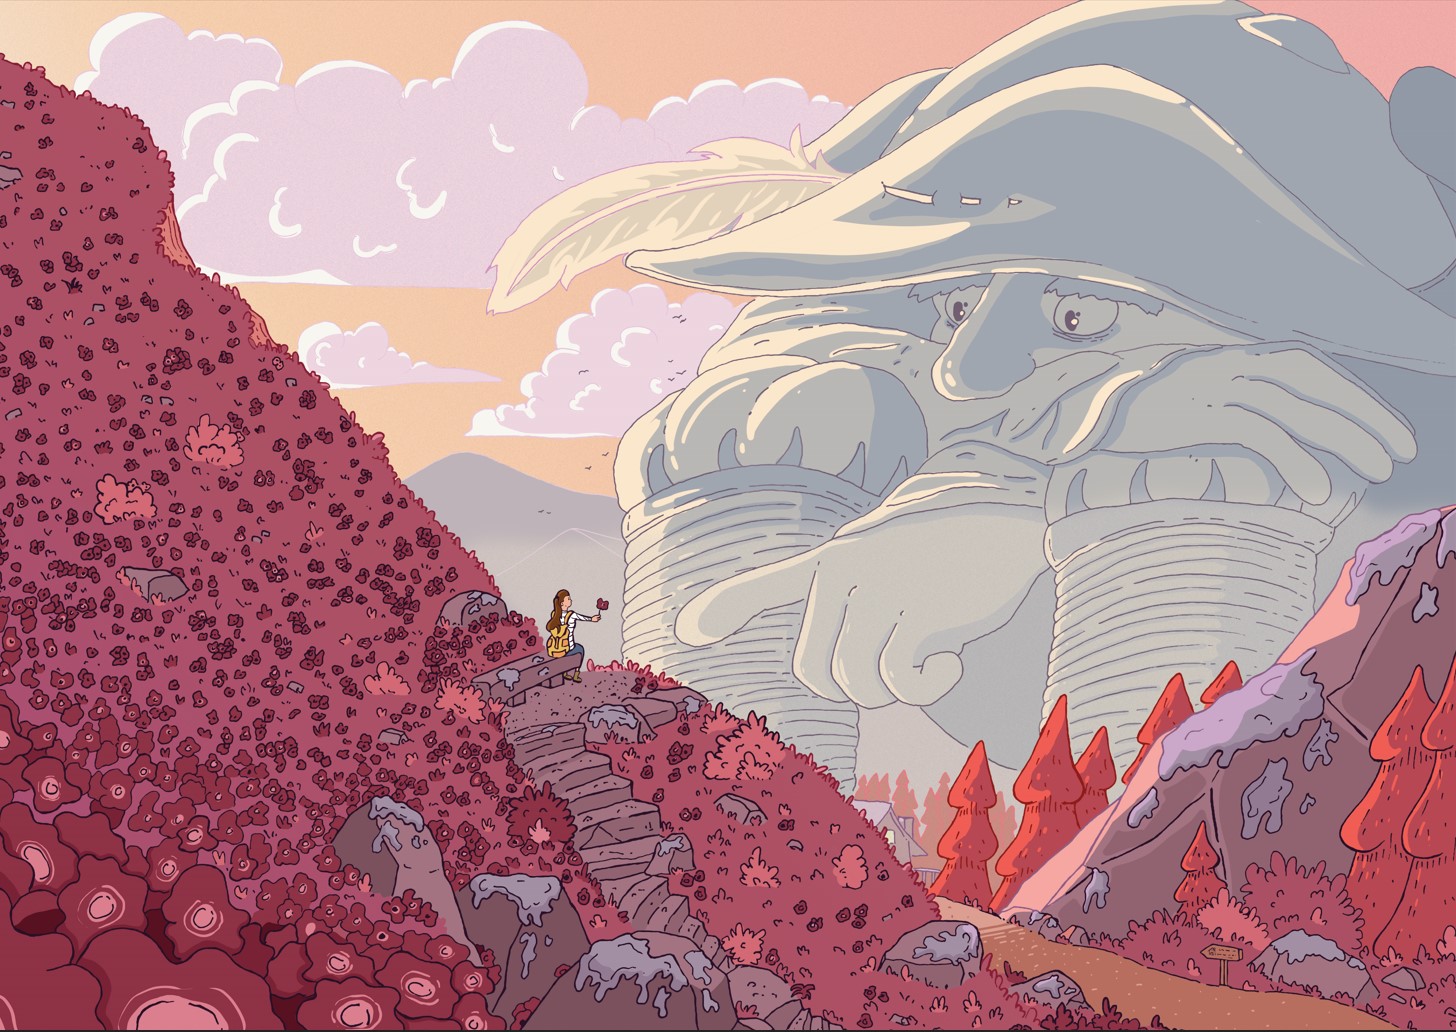 géant du rocher de naye montreux illustration fantasy